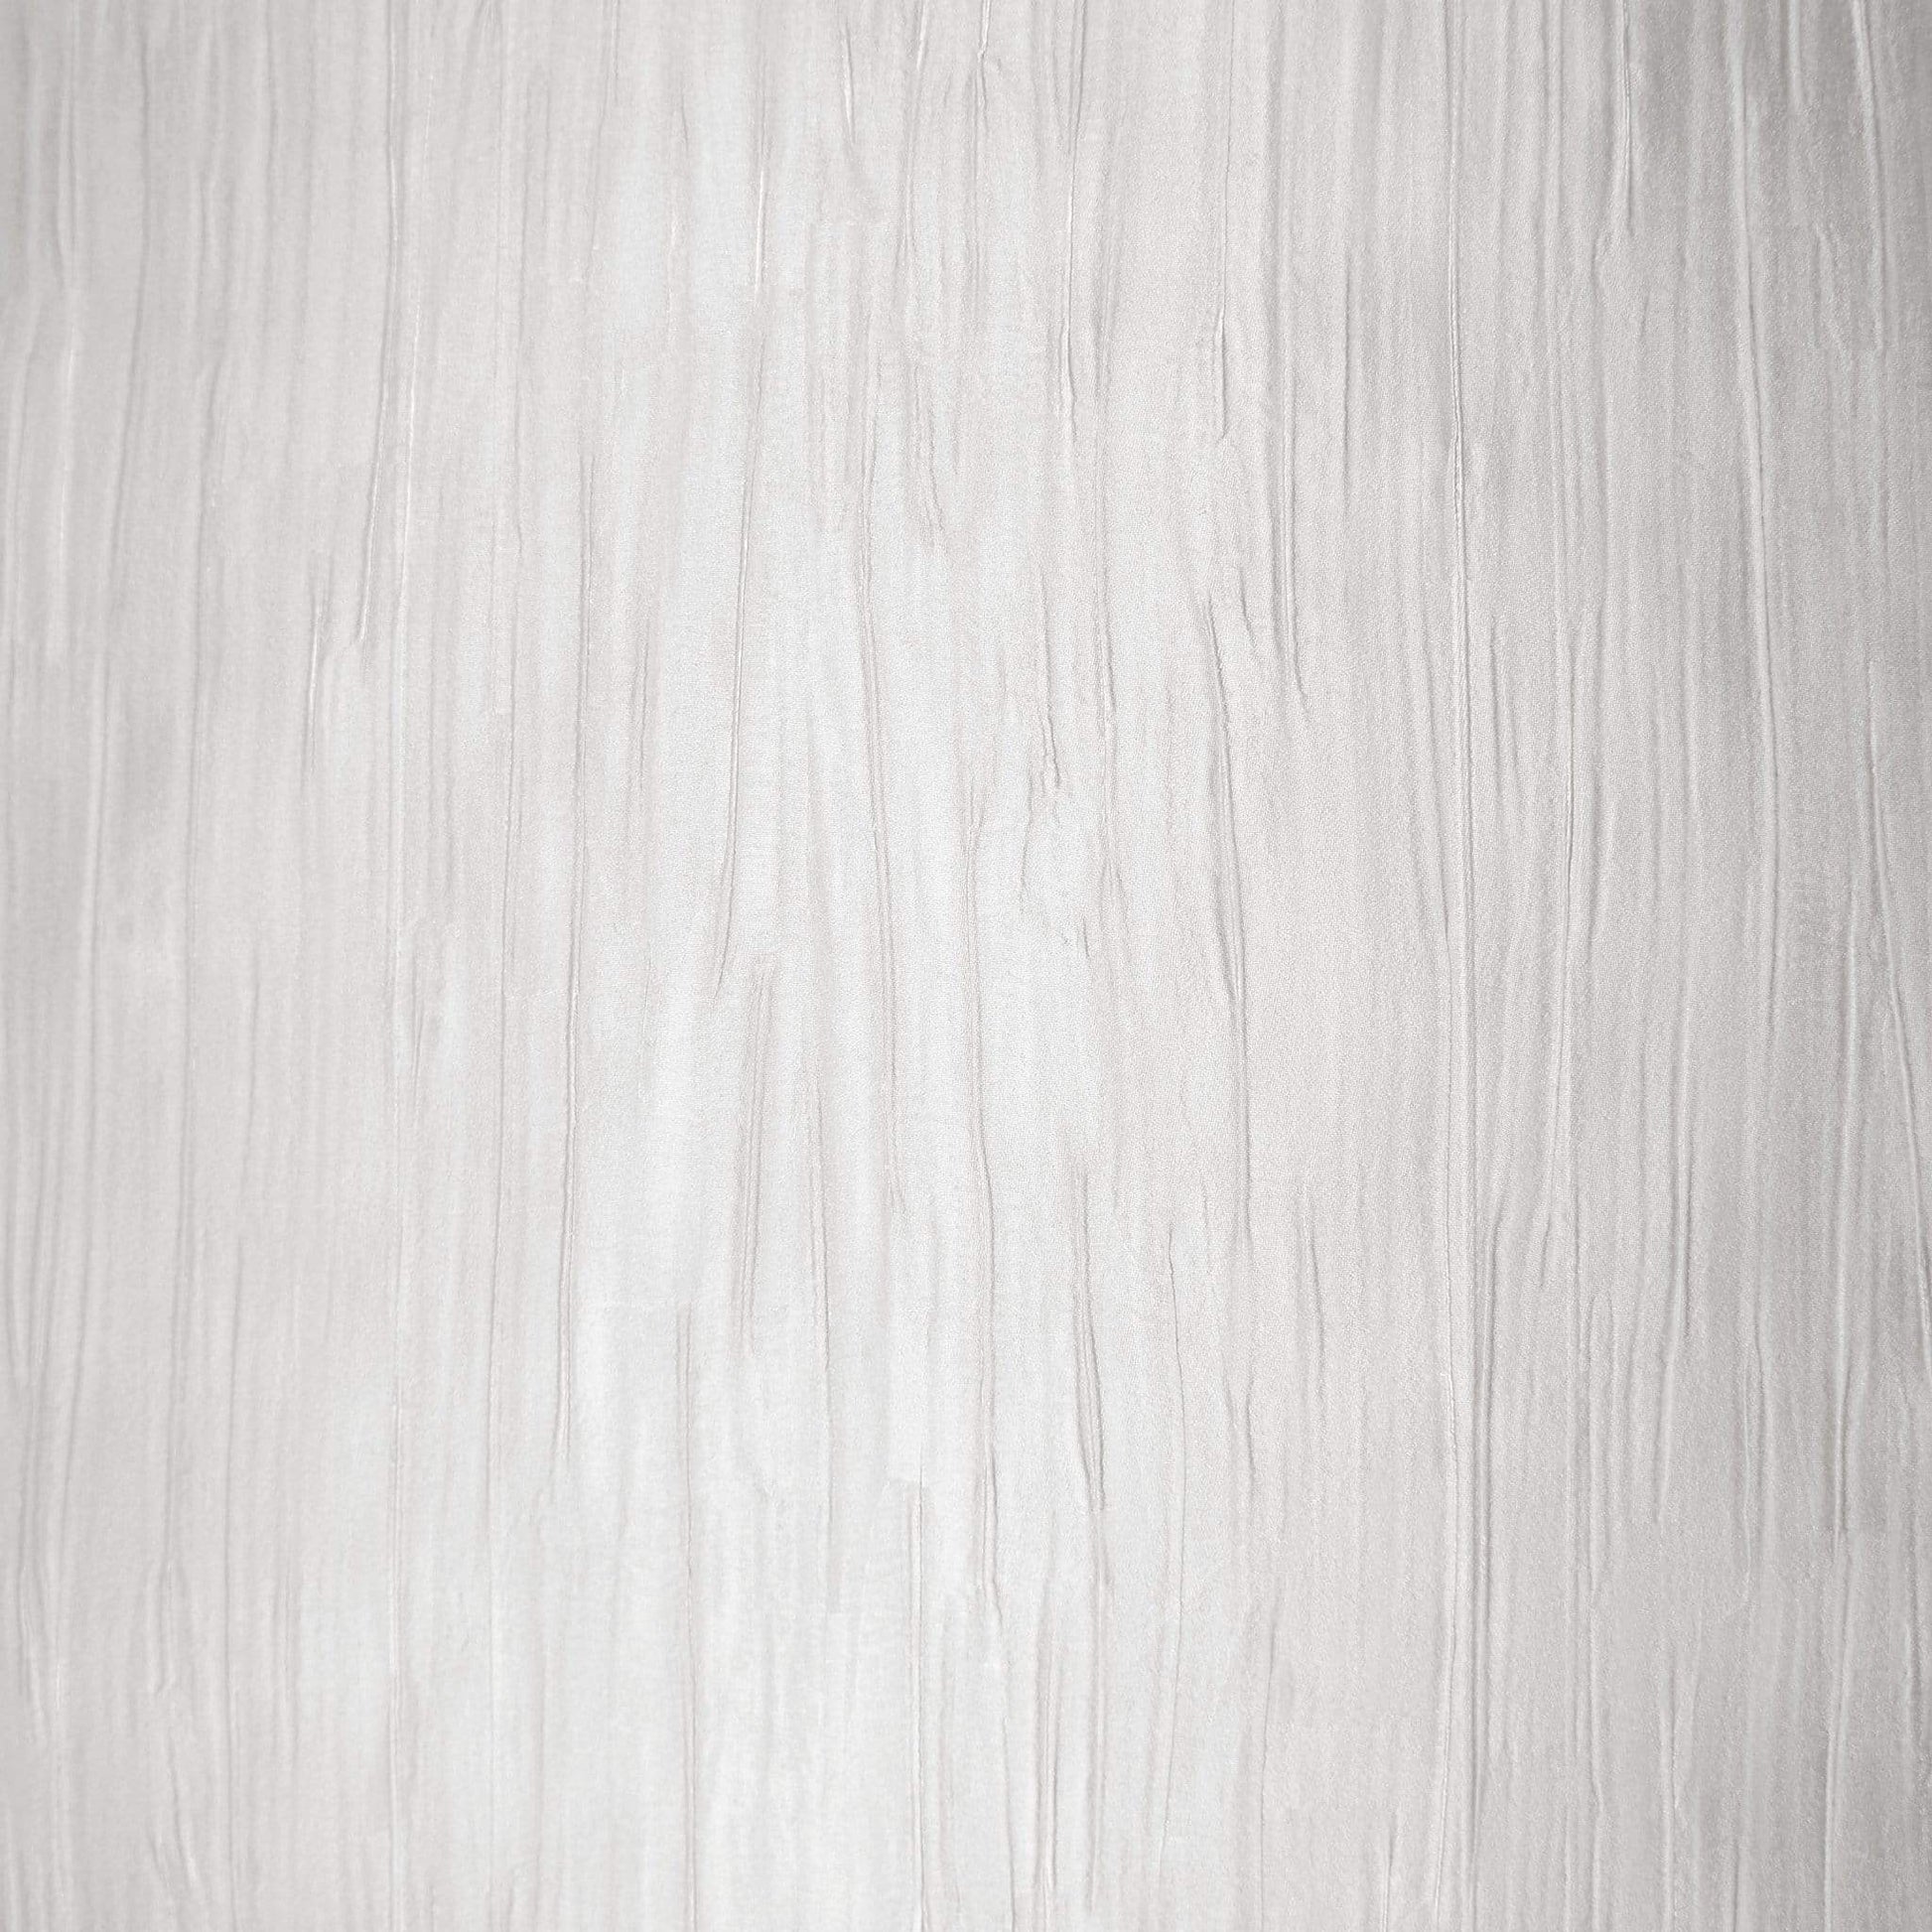 Wallpaper  -  Holden ferrara grey Wallpaper - 49232  -  50154756